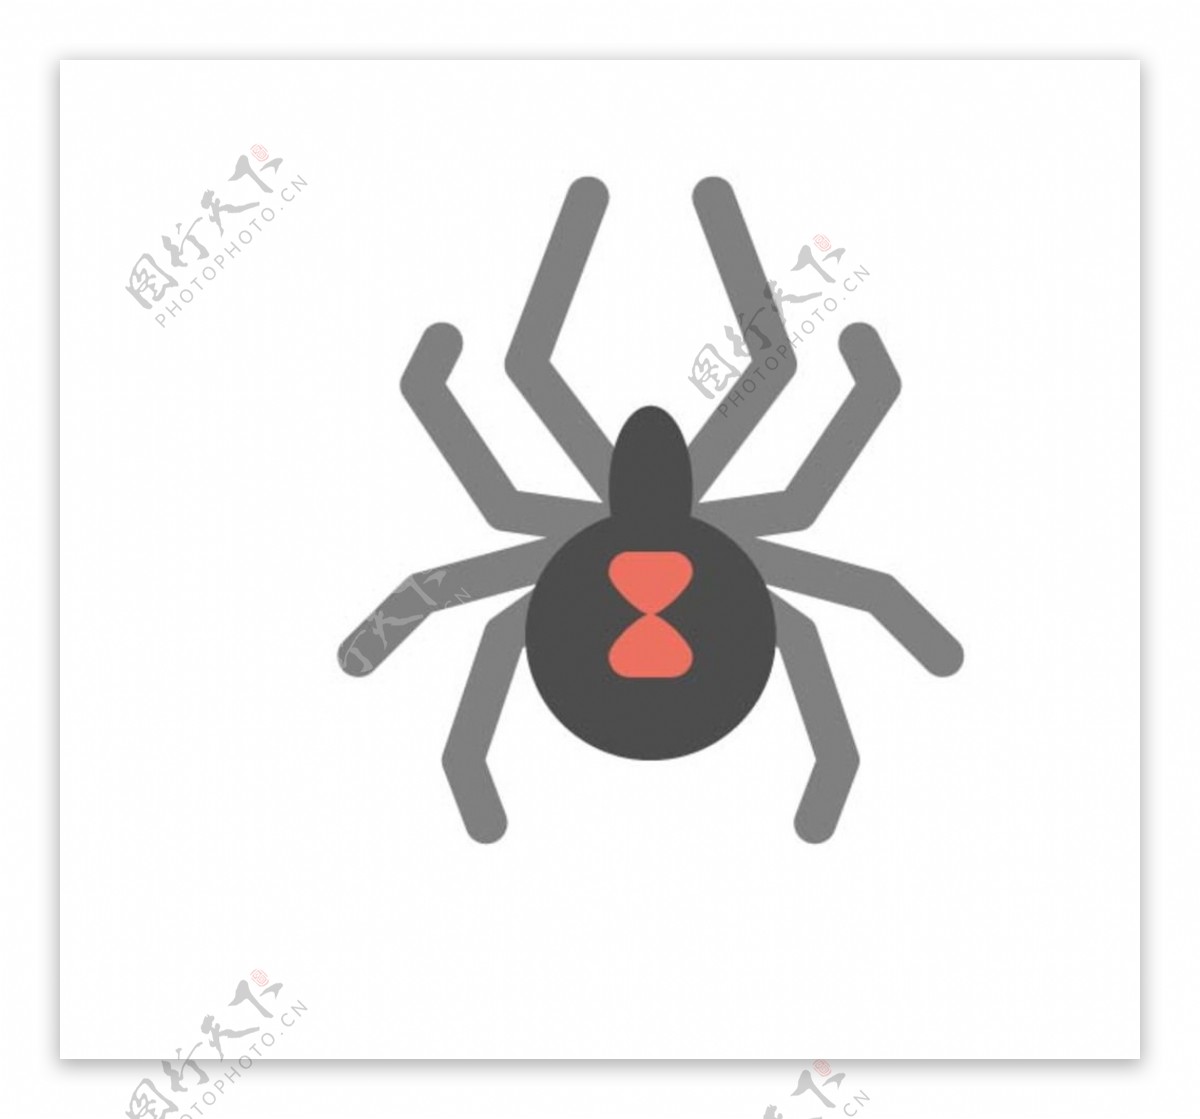 蜘蛛 蜘蛛网 - Pixabay上的免费照片 - Pixabay